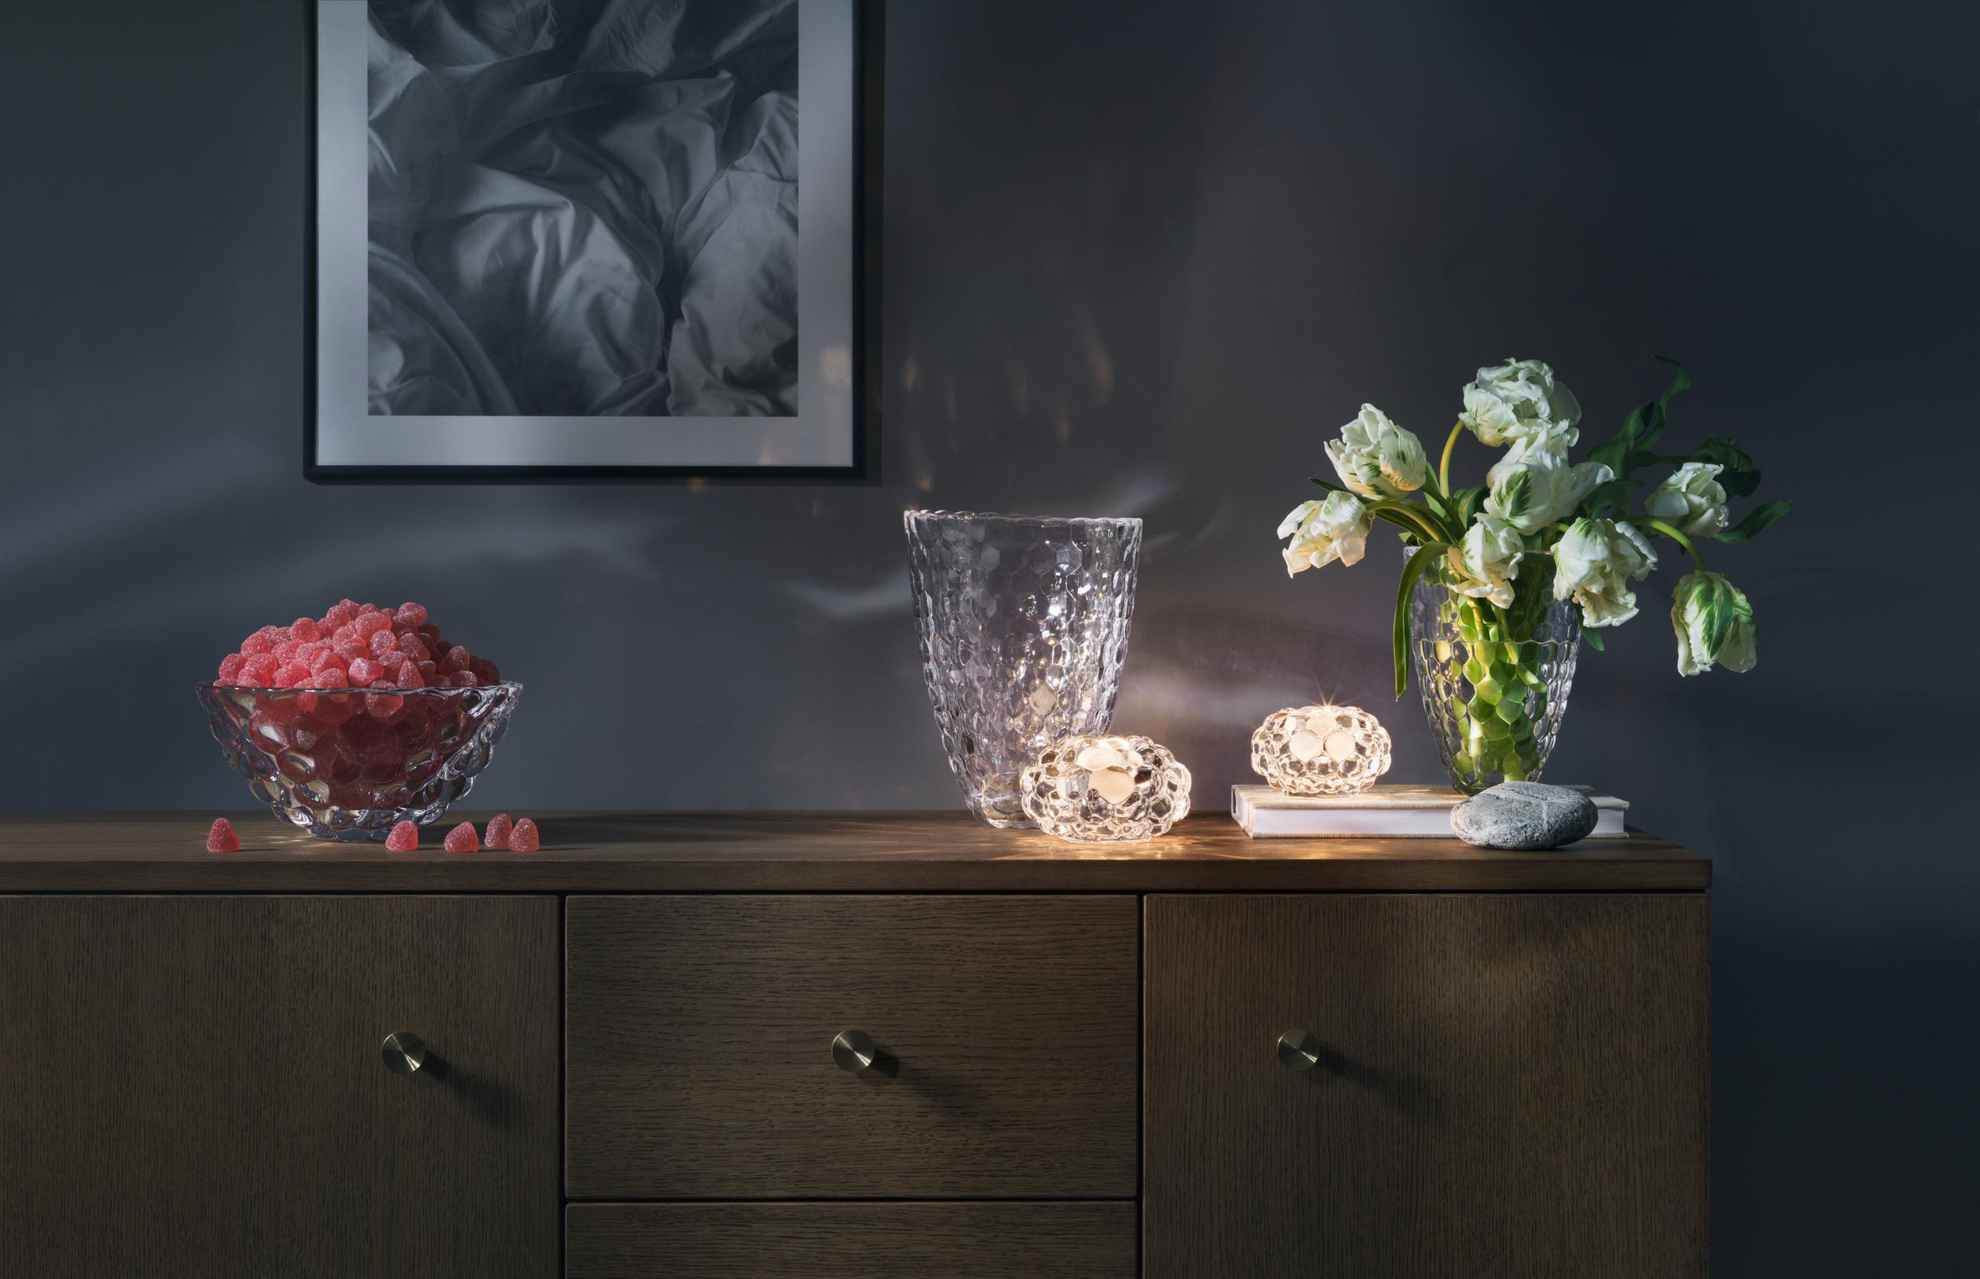 Objets design et en verre posés sur un meuble en bois. Sur ce meuble sont disposés deux bougeoirs avec des bougies allumées et deux vases, l'un avec des tulipes et l'autre rempli de bonbons rouges.